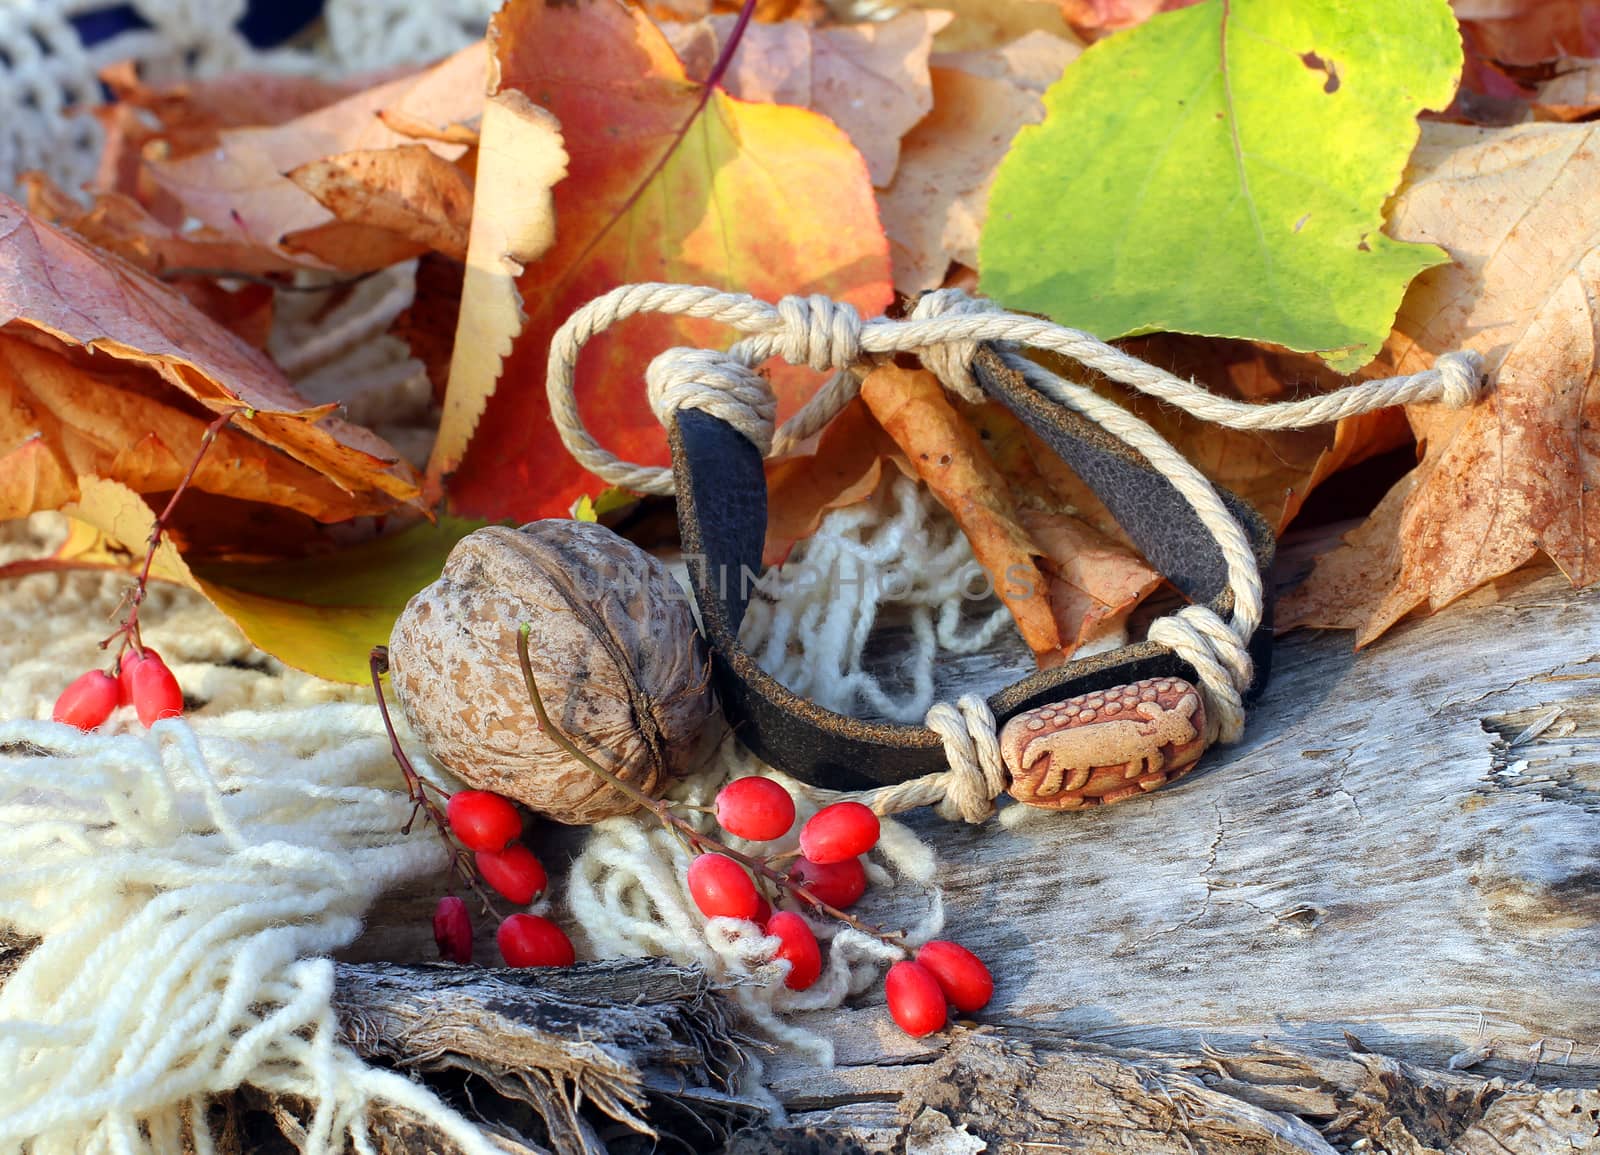 Ethnic handmade leather bracelet on autumn-style background